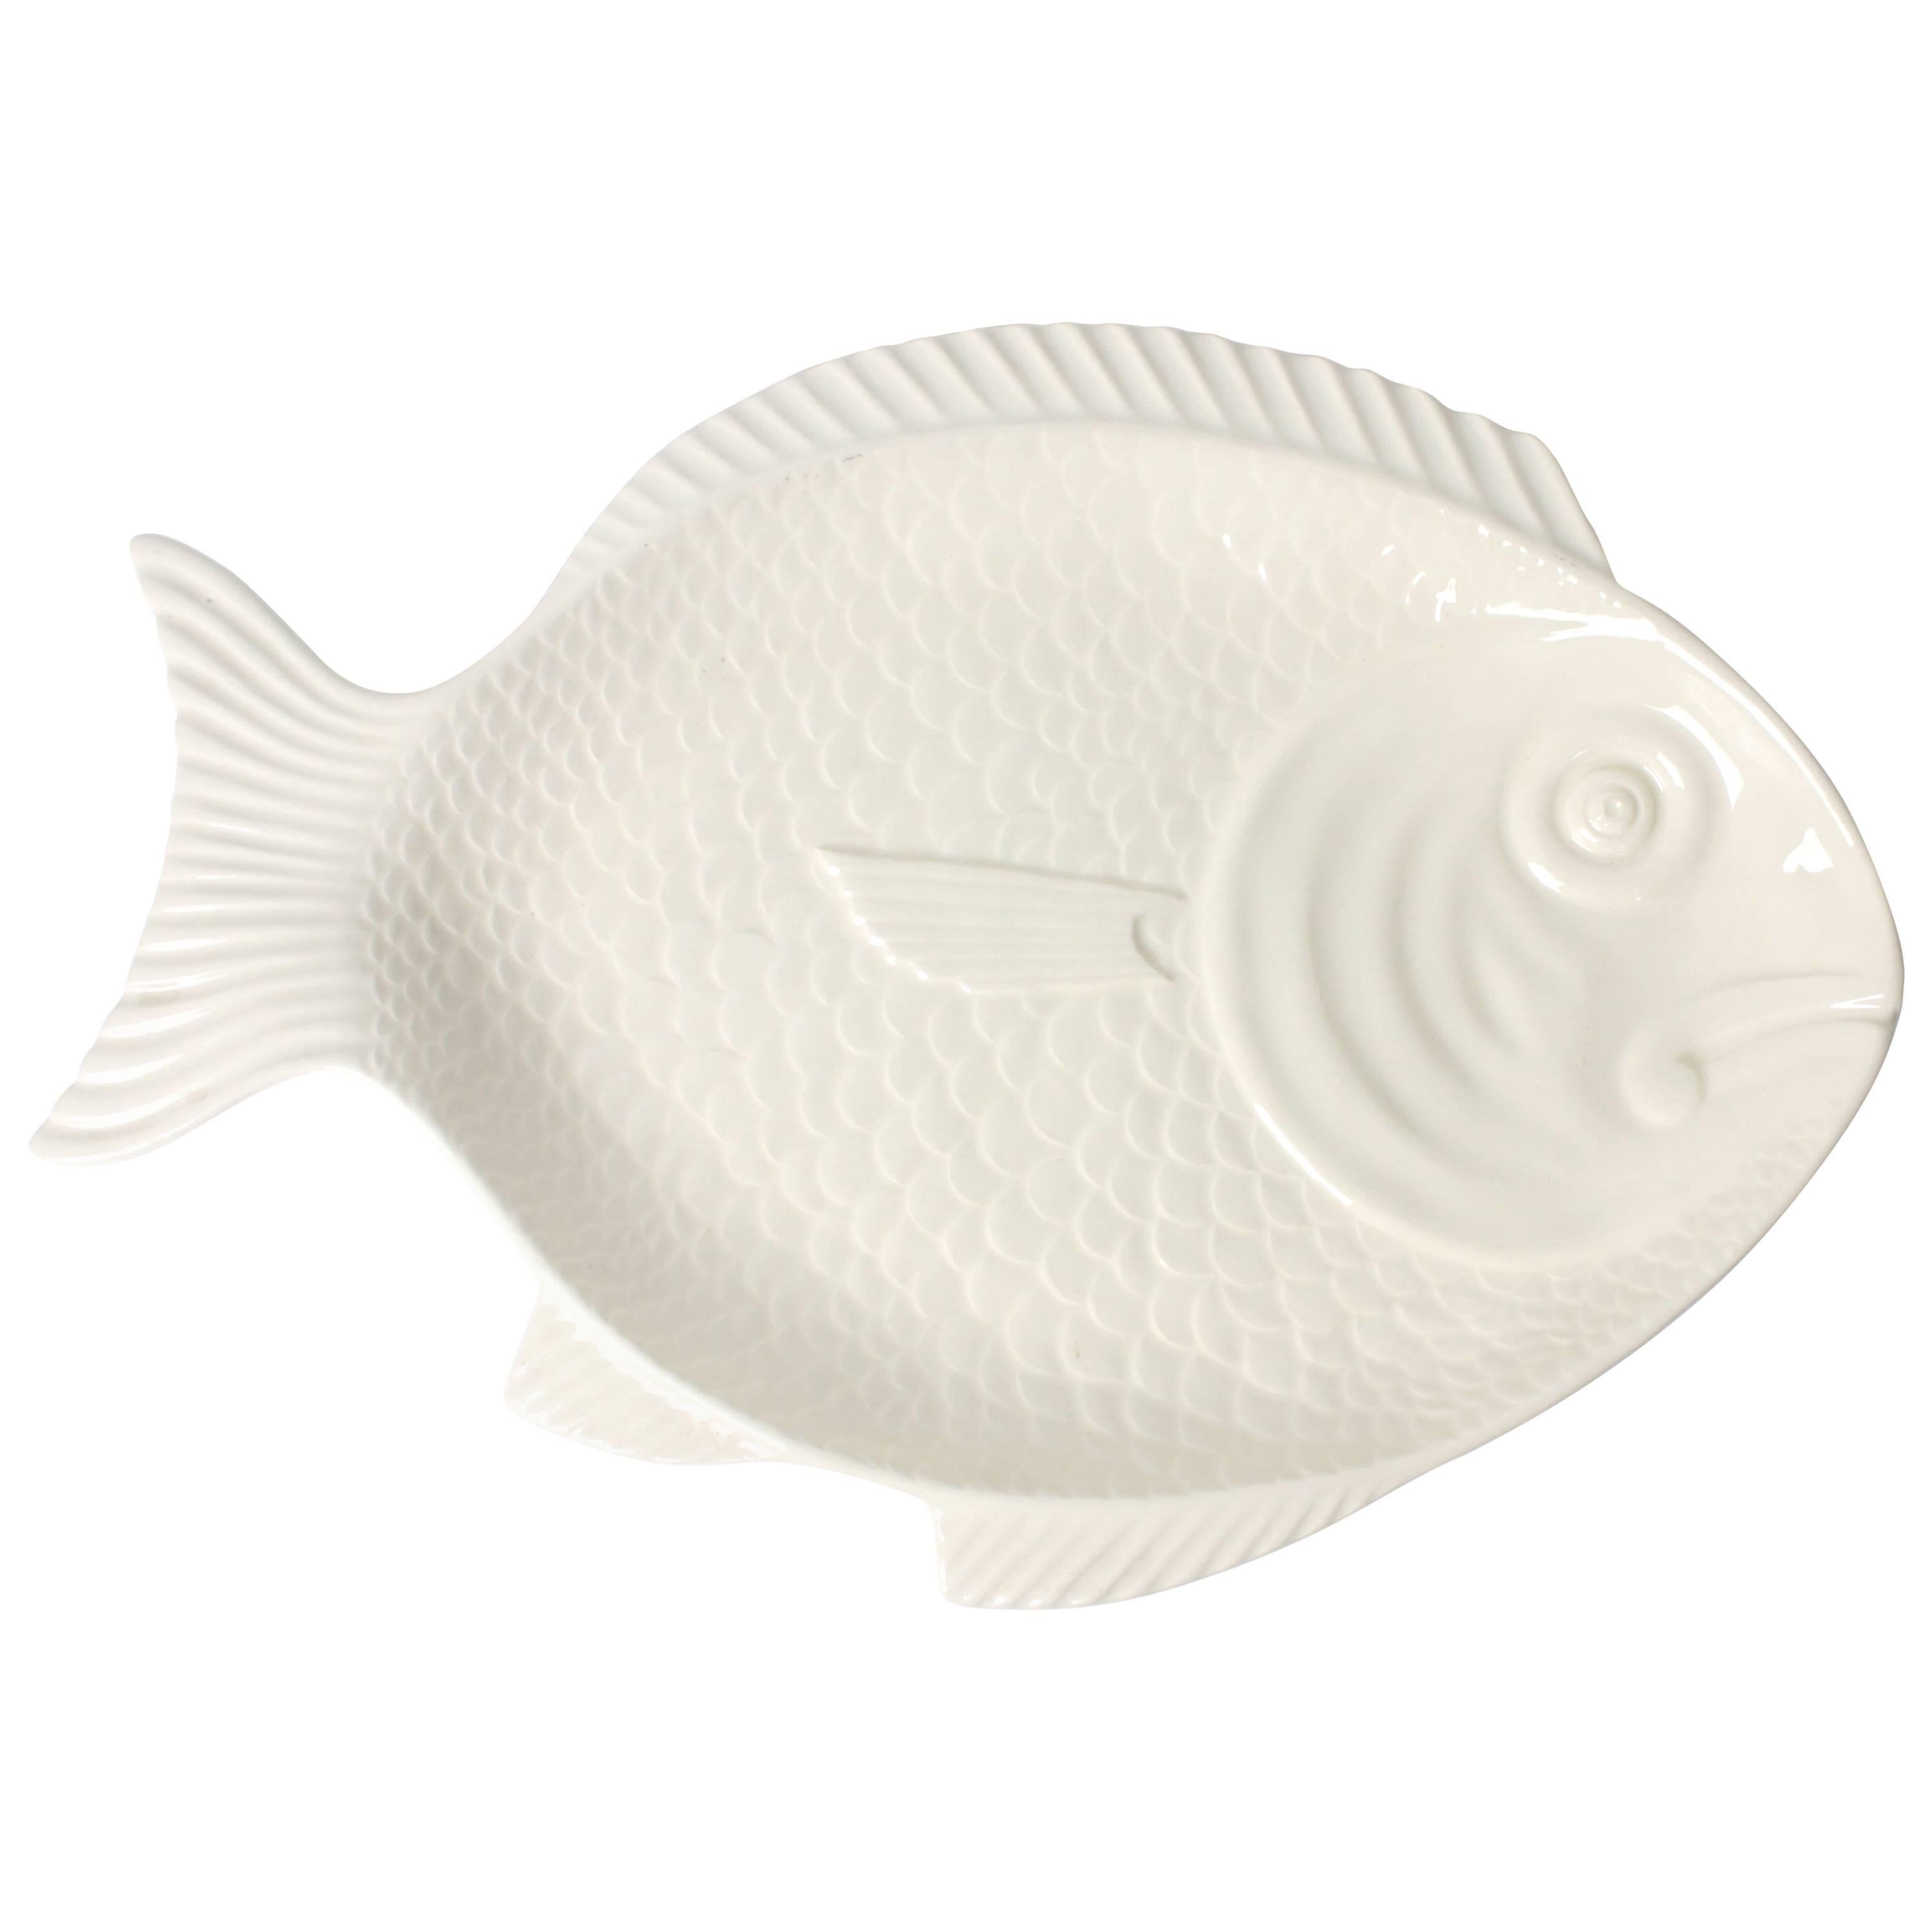 1960s Portuguese White Glazed Ceramic Fish Platter